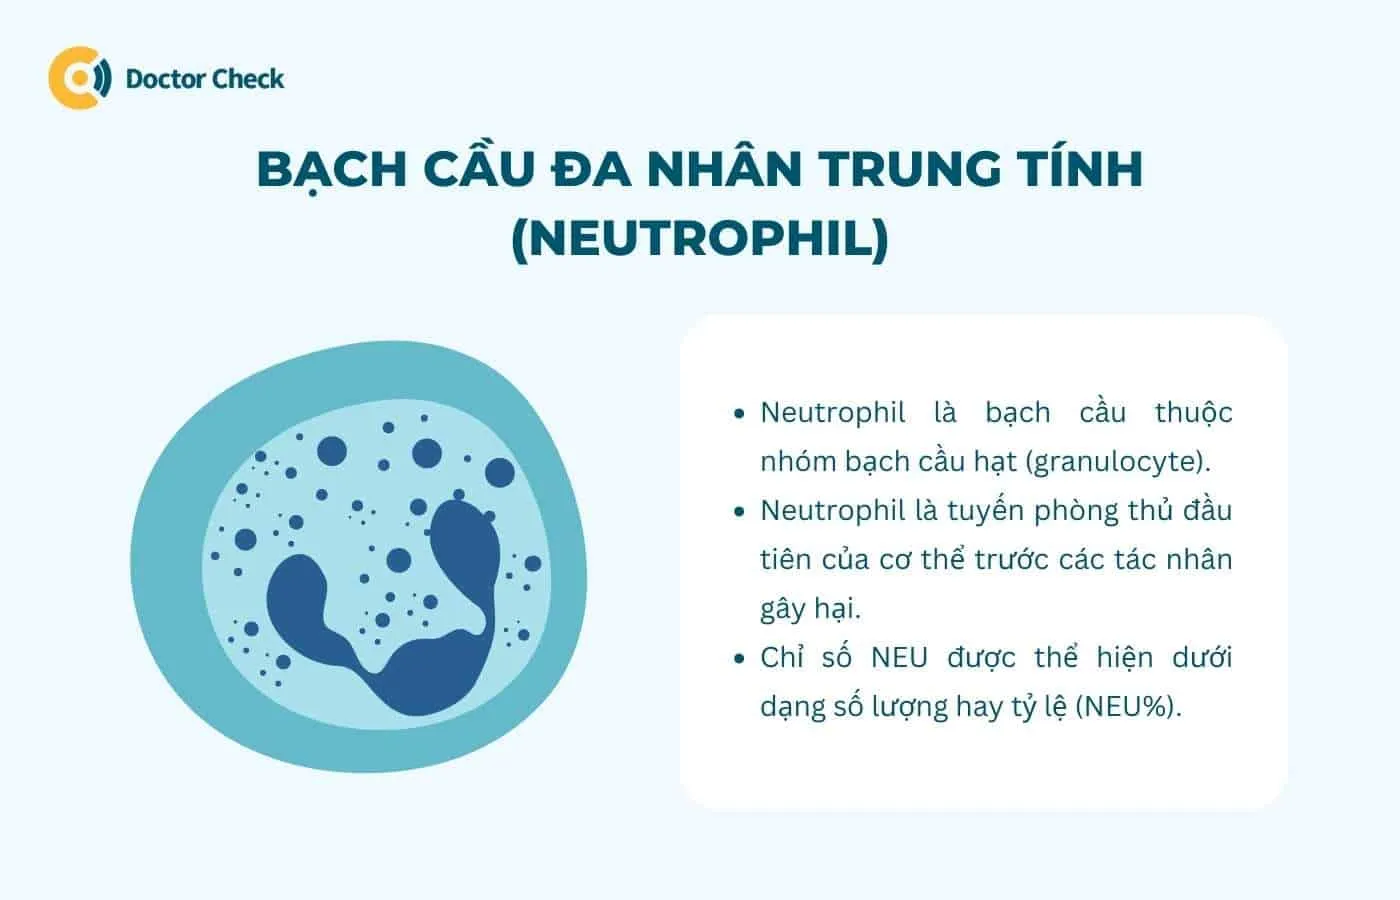 Bạch cầu đa nhân trung tính (neutrophil) là gì?